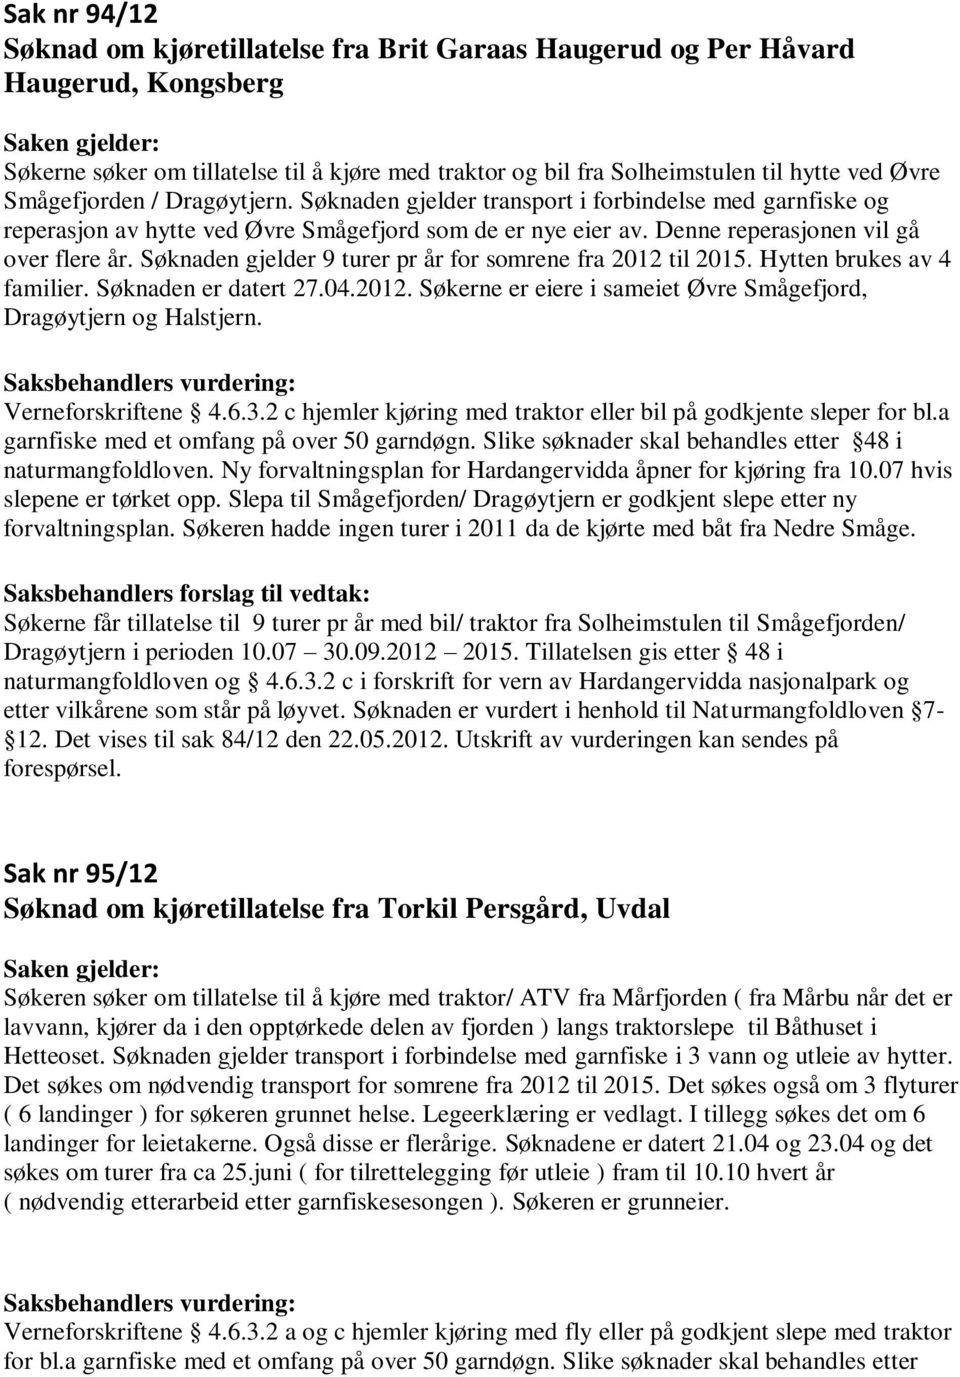 Søknaden gjelder 9 turer pr år for somrene fra 2012 til 2015. Hytten brukes av 4 familier. Søknaden er datert 27.04.2012. Søkerne er eiere i sameiet Øvre Smågefjord, Dragøytjern og Halstjern.